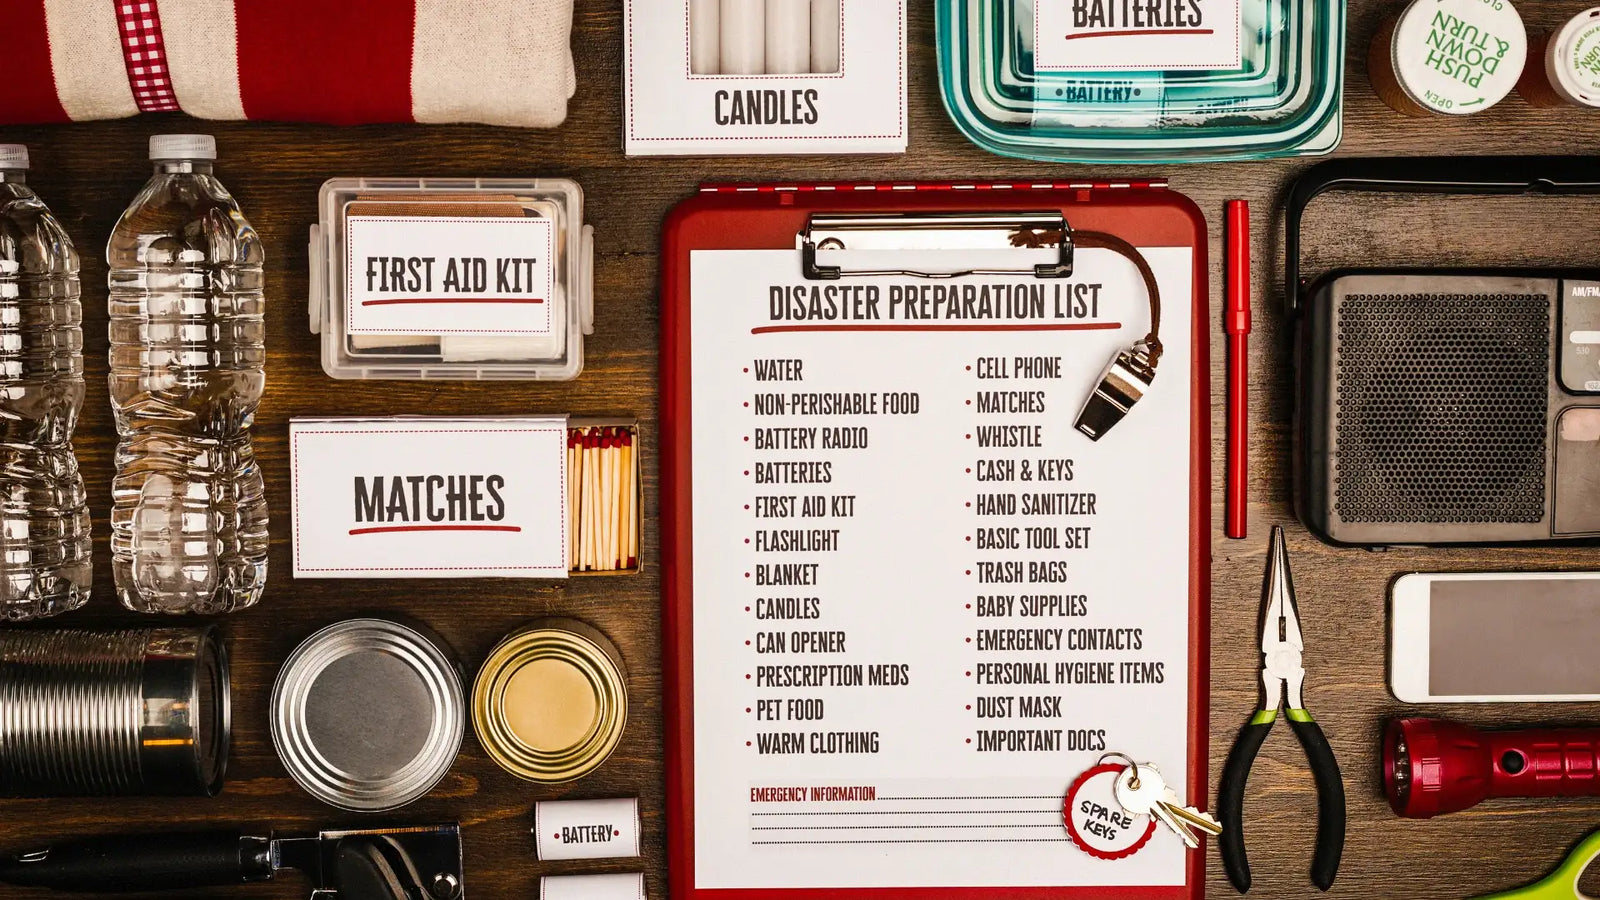 Tornado Emergency Kit Checklist  Get our Tornado Preparedness Kit  Checklist - Valley Food Storage